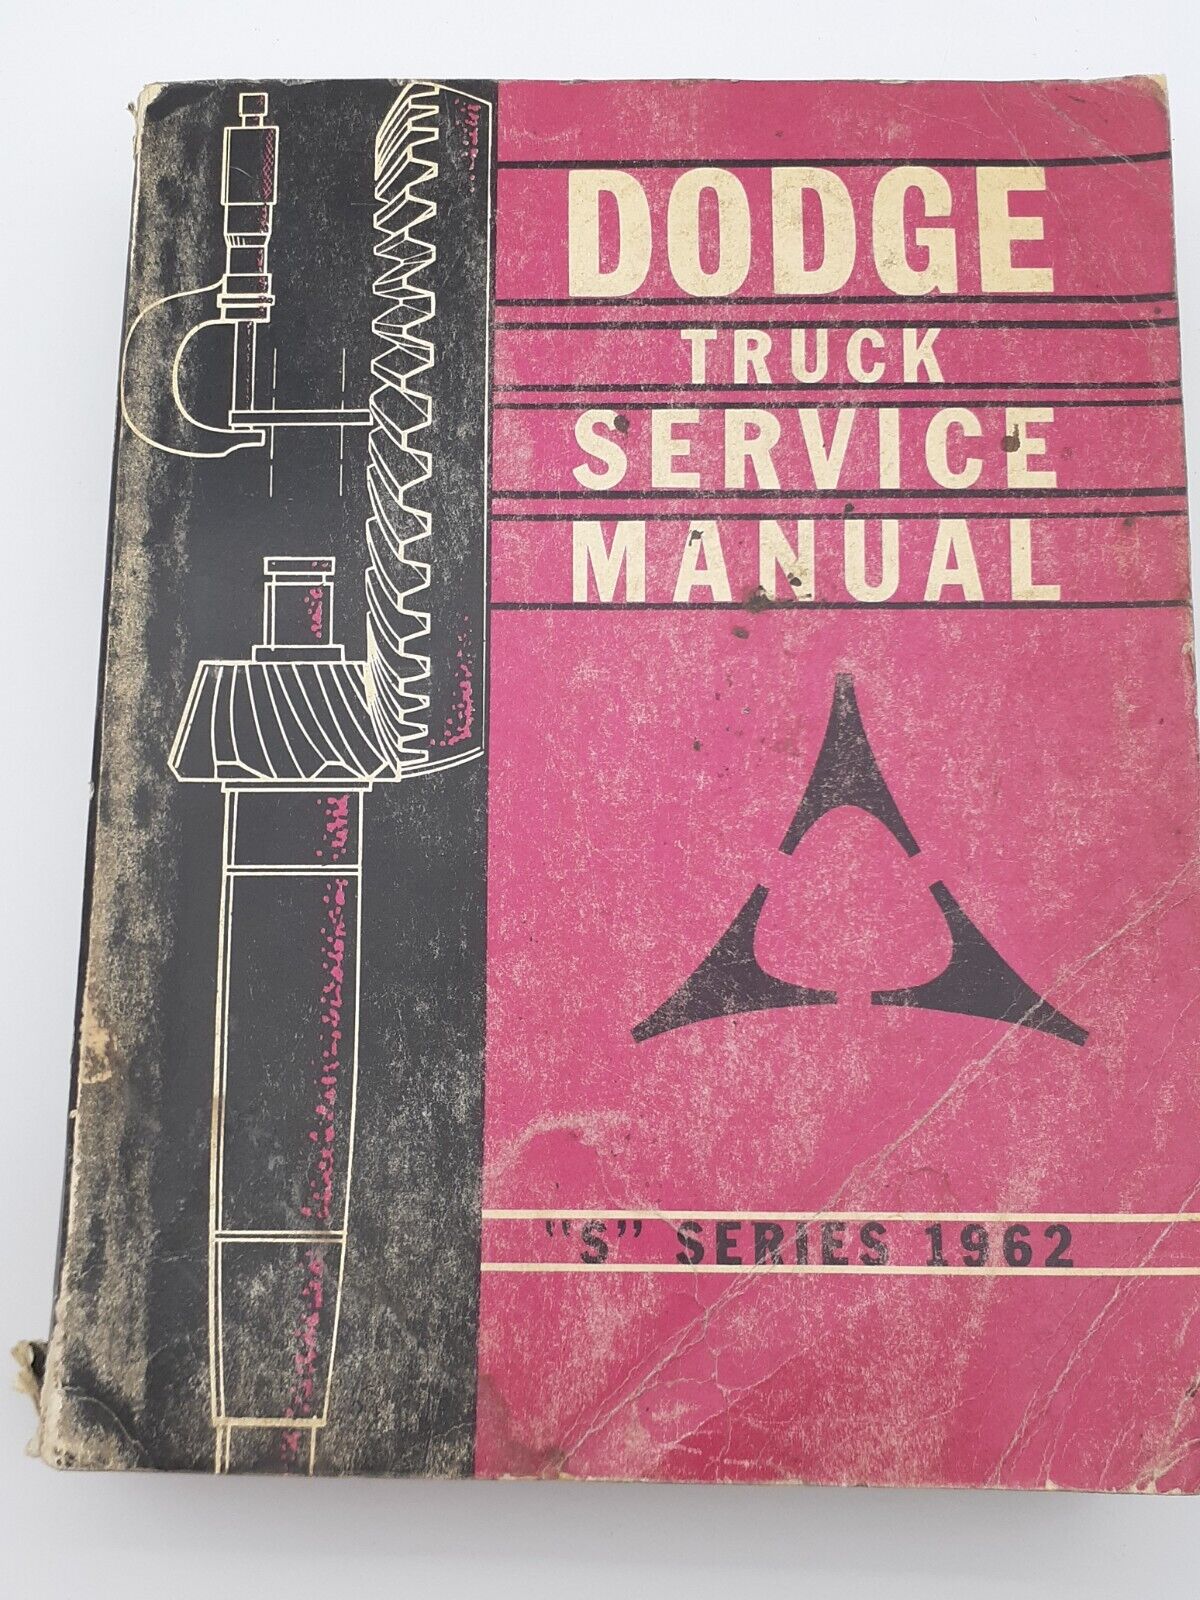 Dodge Truck Service Manual S Series 1962 Chrysler Motors Corp - Truck Repair